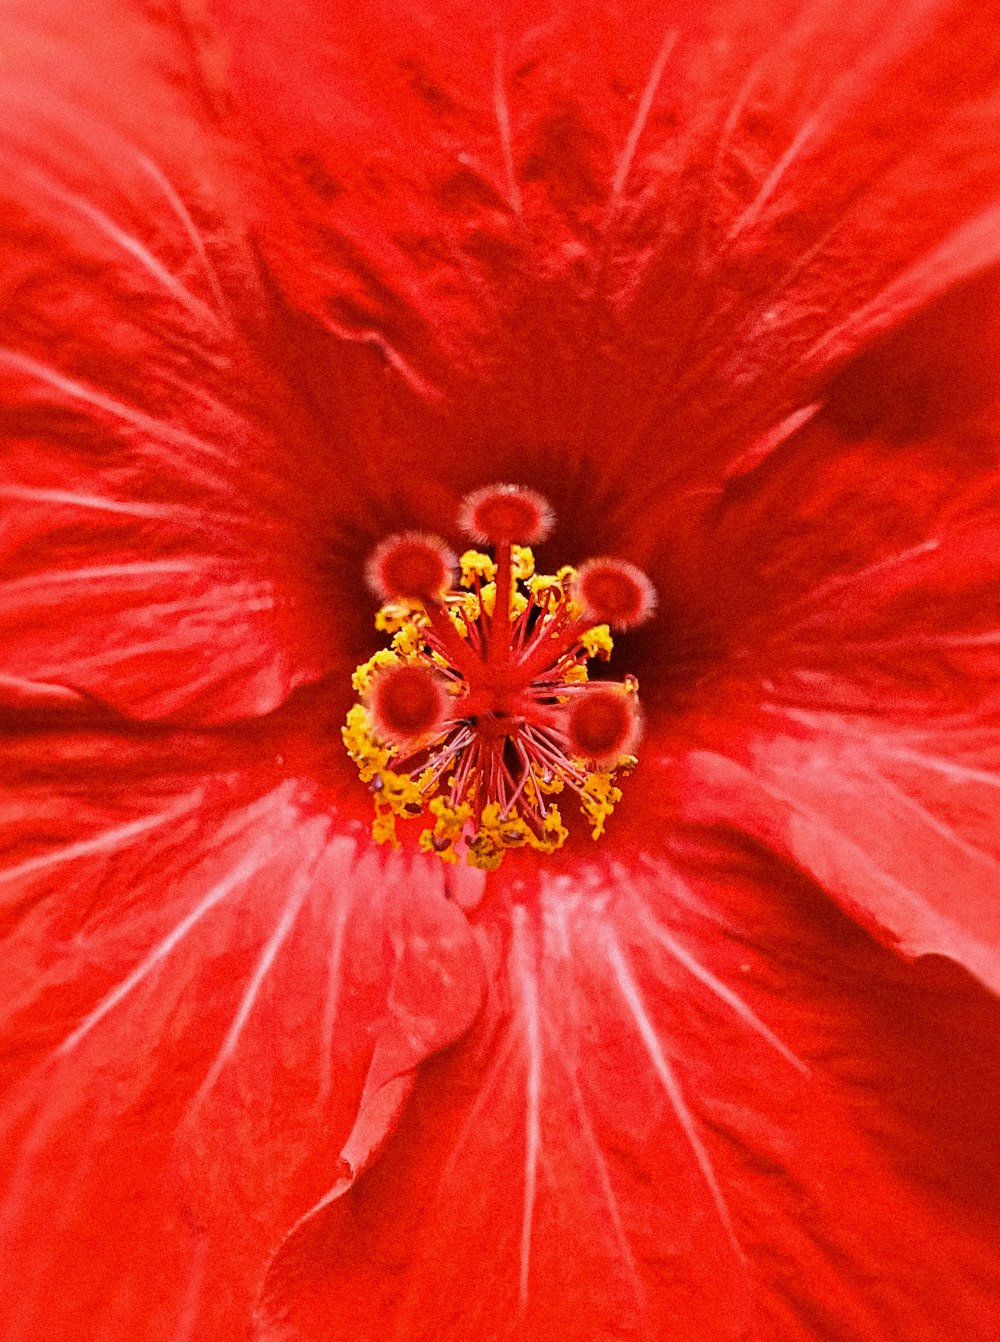 um close up de uma flor vermelha com estame amarelo